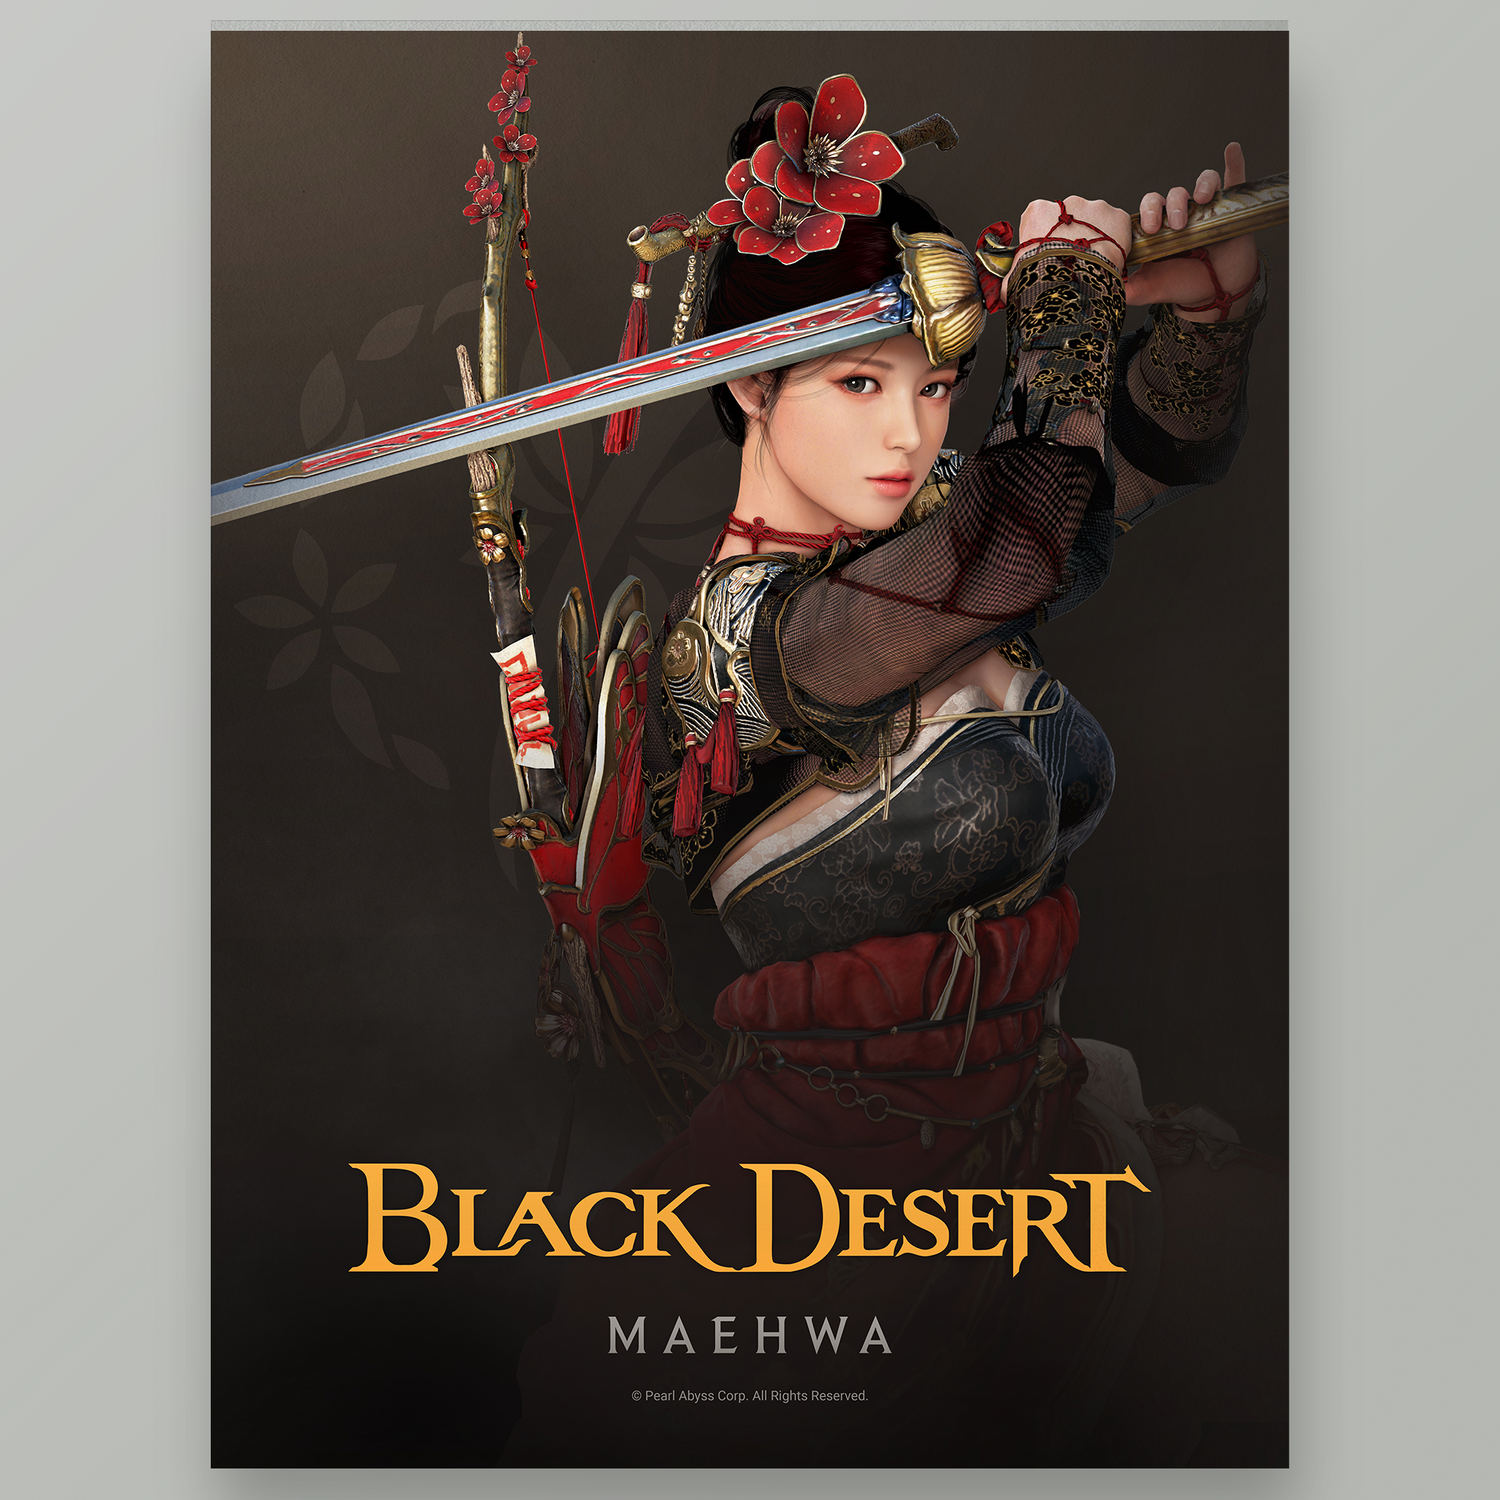 Black Desert Maehwa Poster